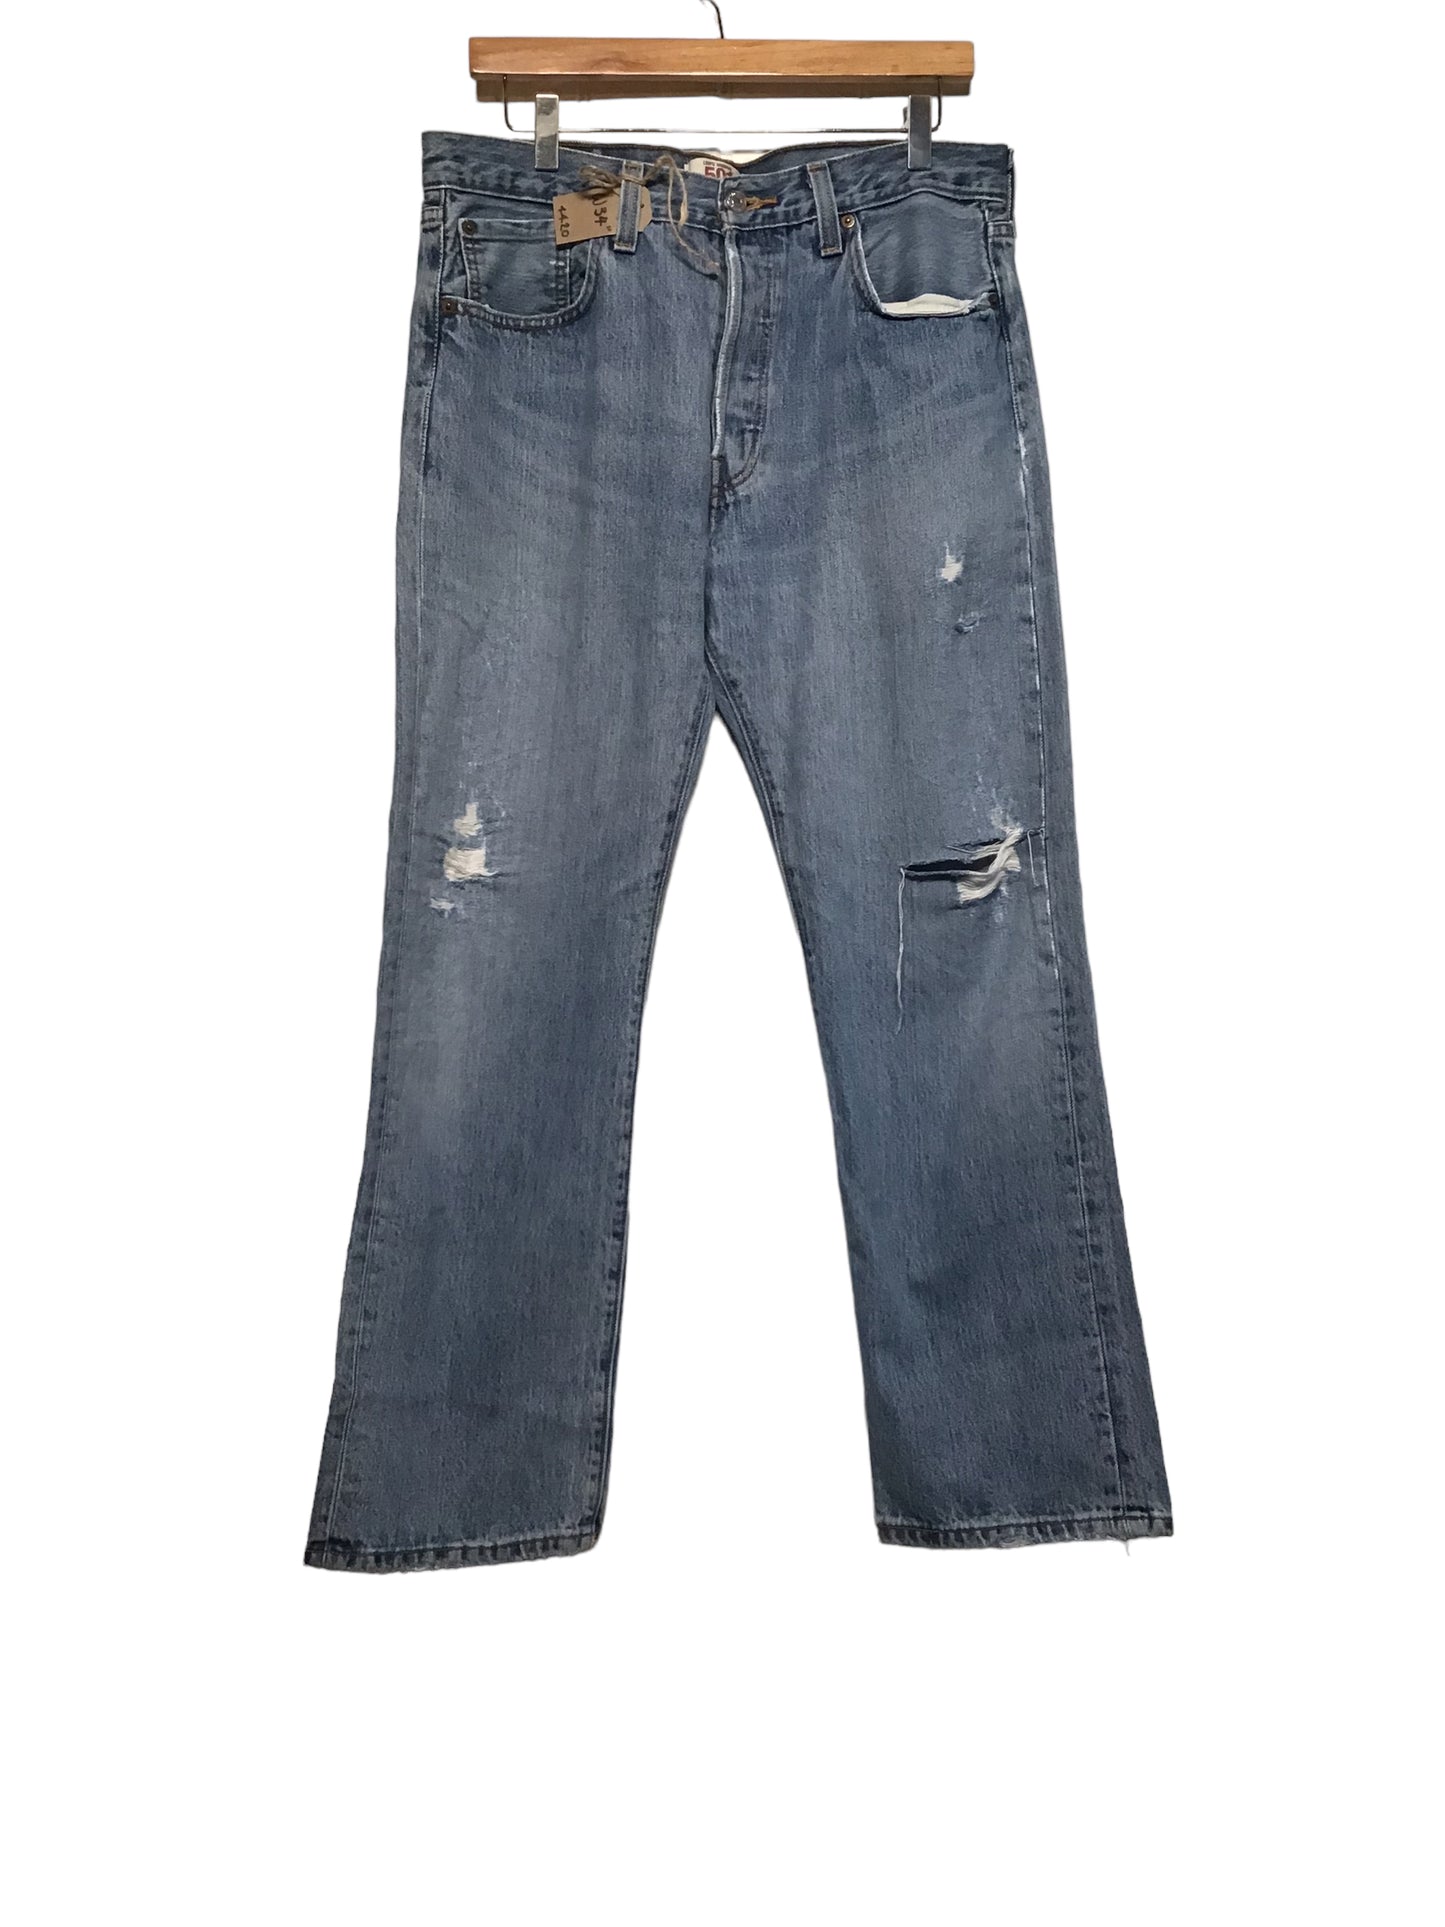 Levi 601 Jeans (34x29)